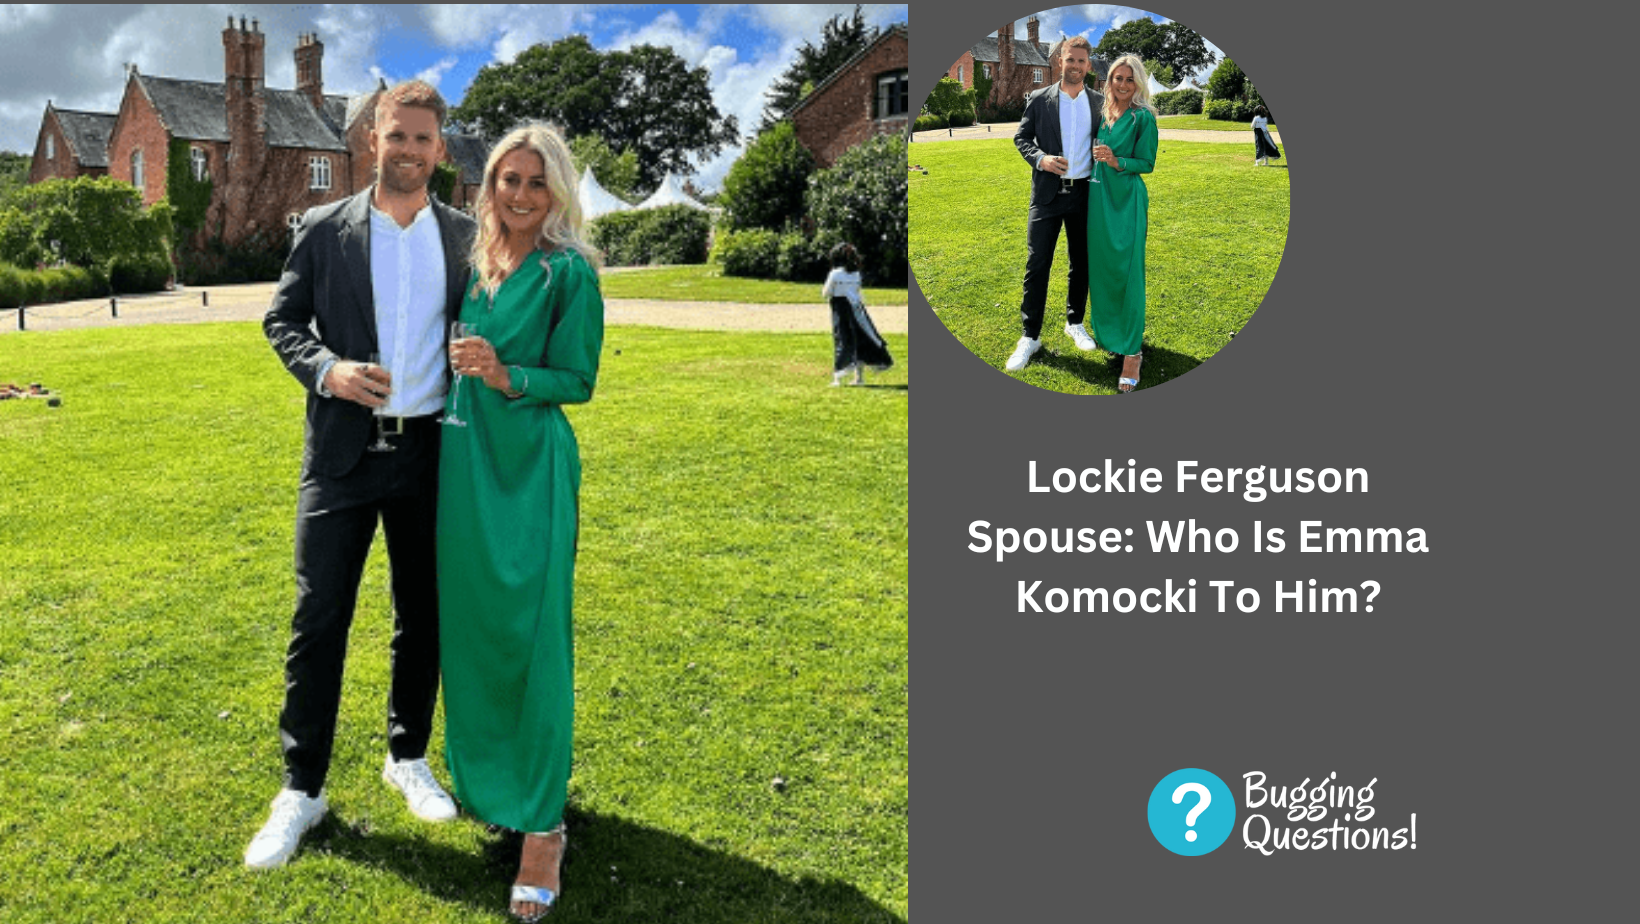 Lockie Ferguson Spouse: Who Is Emma Komocki To Him?